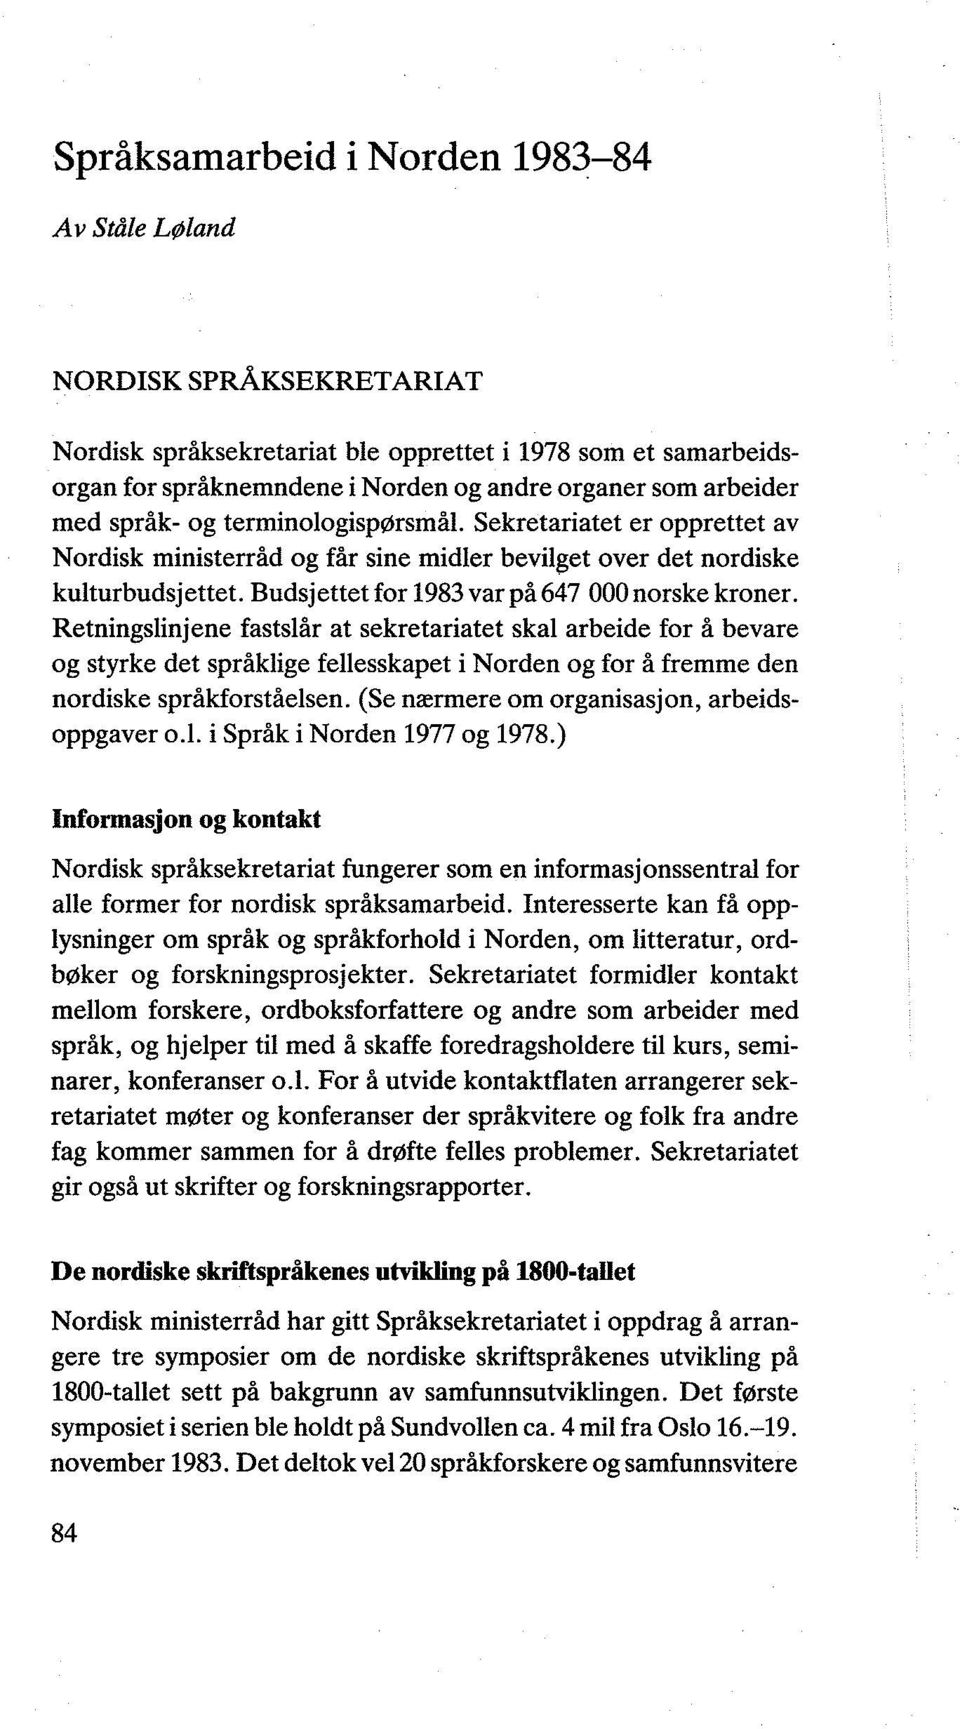 Retningslinjene fastslår at sekretariatet skal arbeide for å bevare og styrke det språklige fellesskapet i Norden og for å fremme den nordiske språkforståelsen.